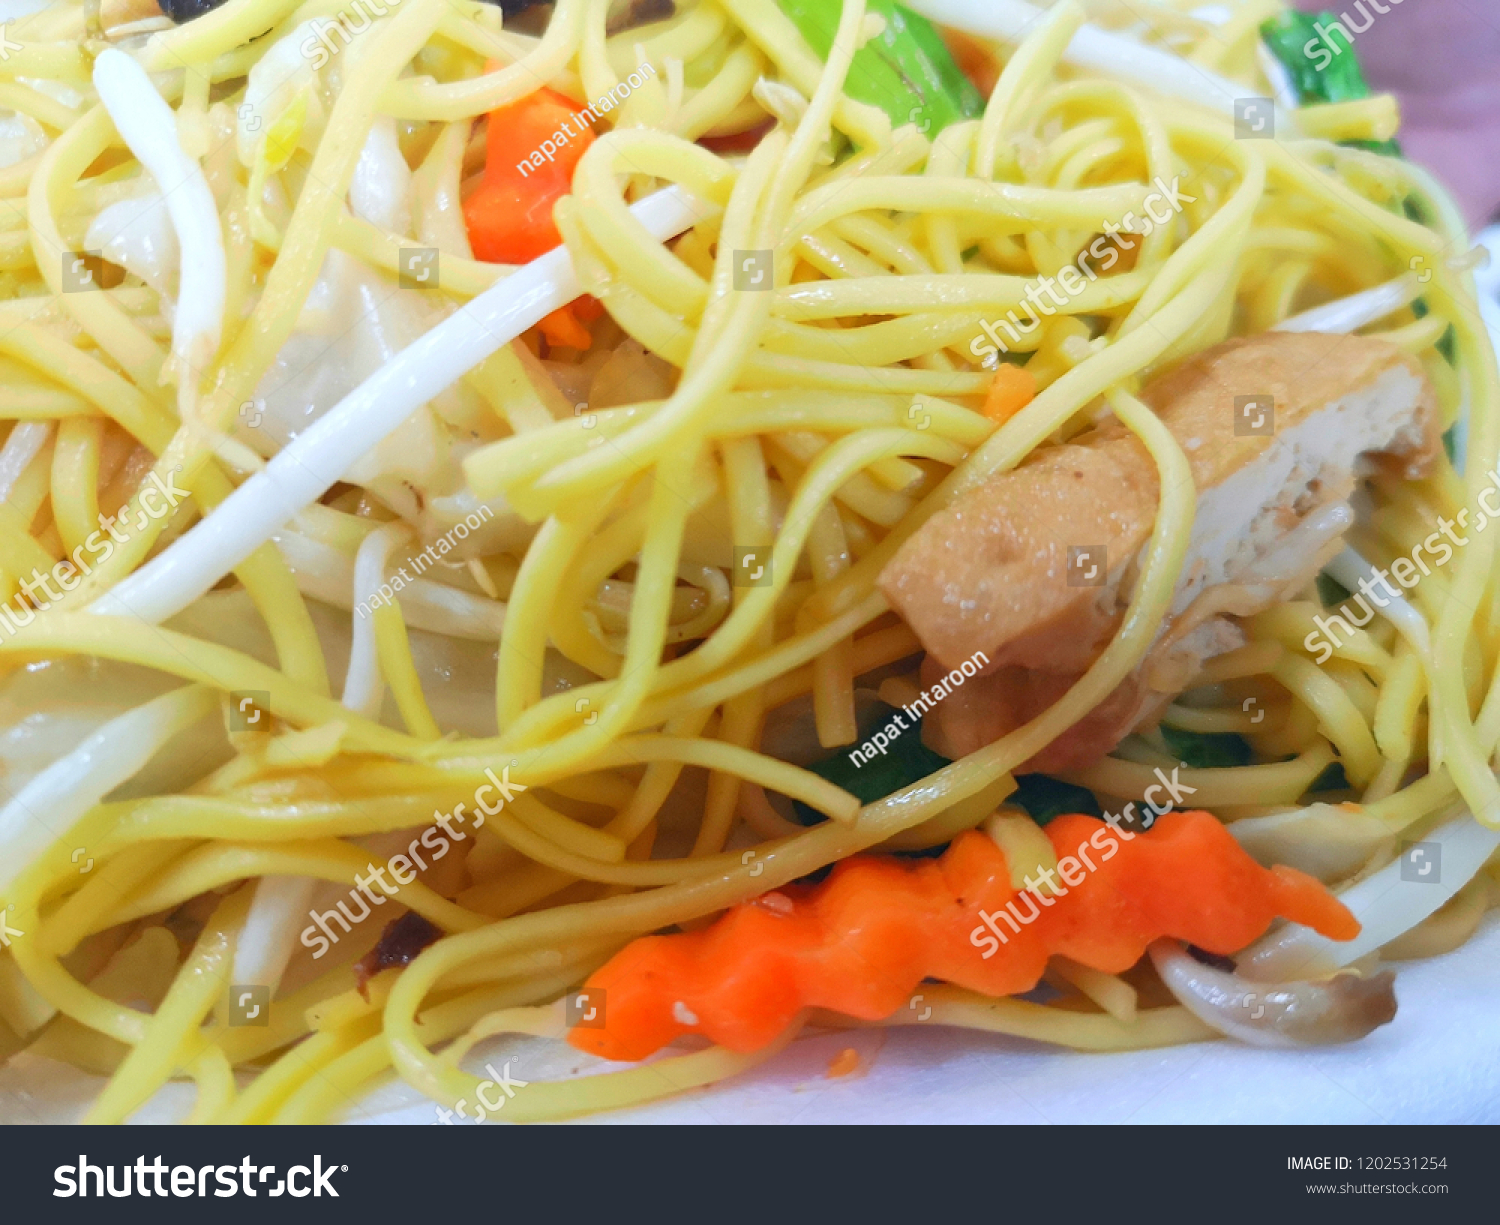 Stir fried rice noodles vegetarian for Vegetarian Festival #1202531254